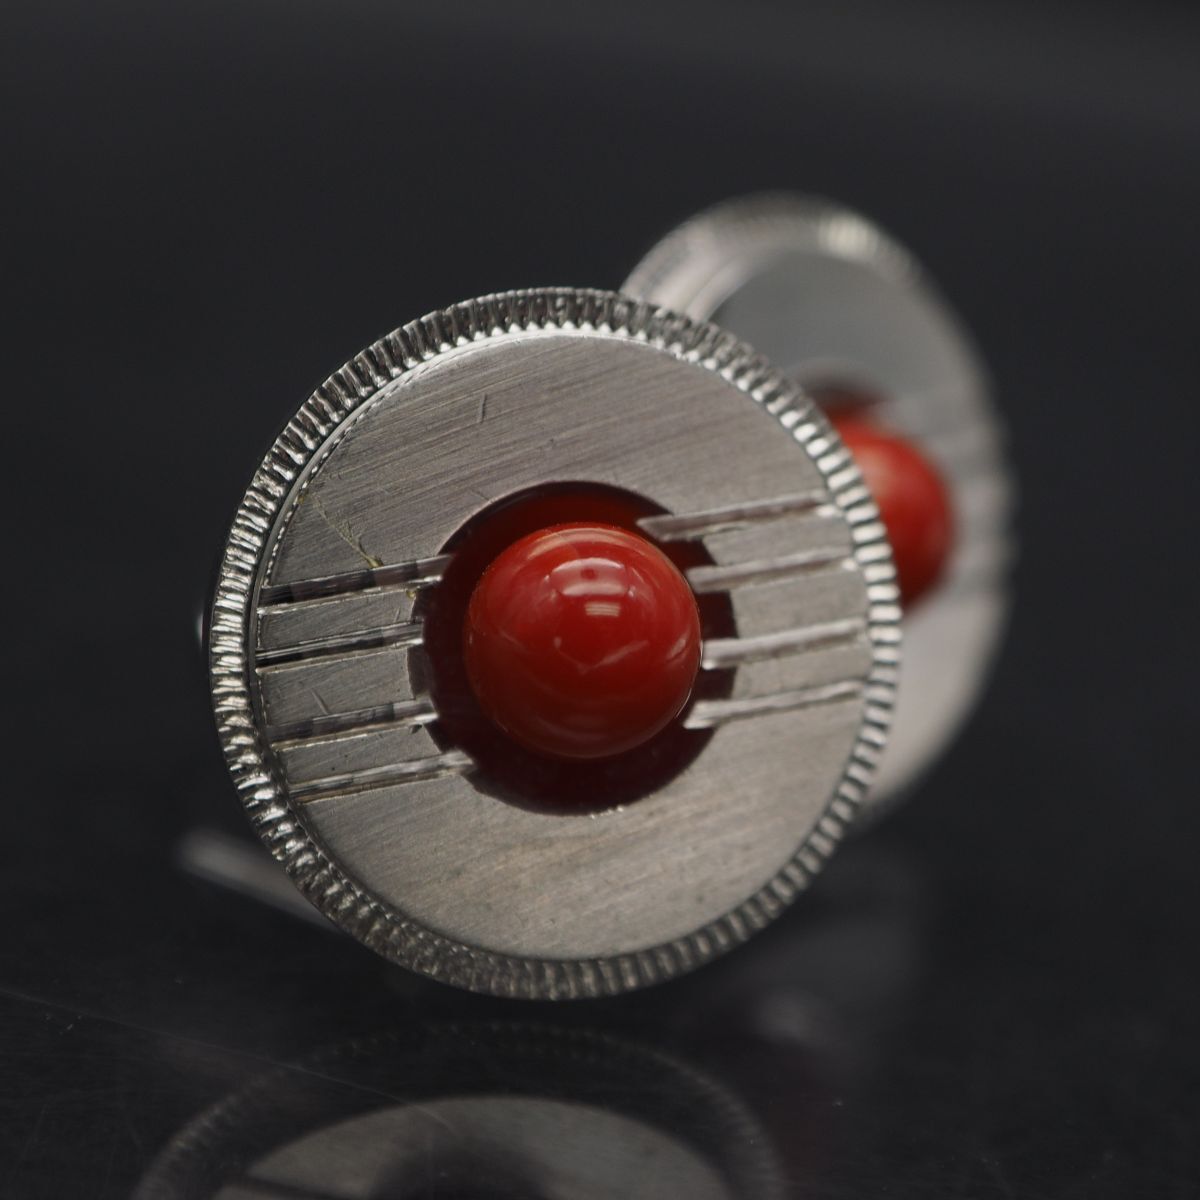 P309 red .. coral cuffs button silver design cuff links 3 month birthstone 